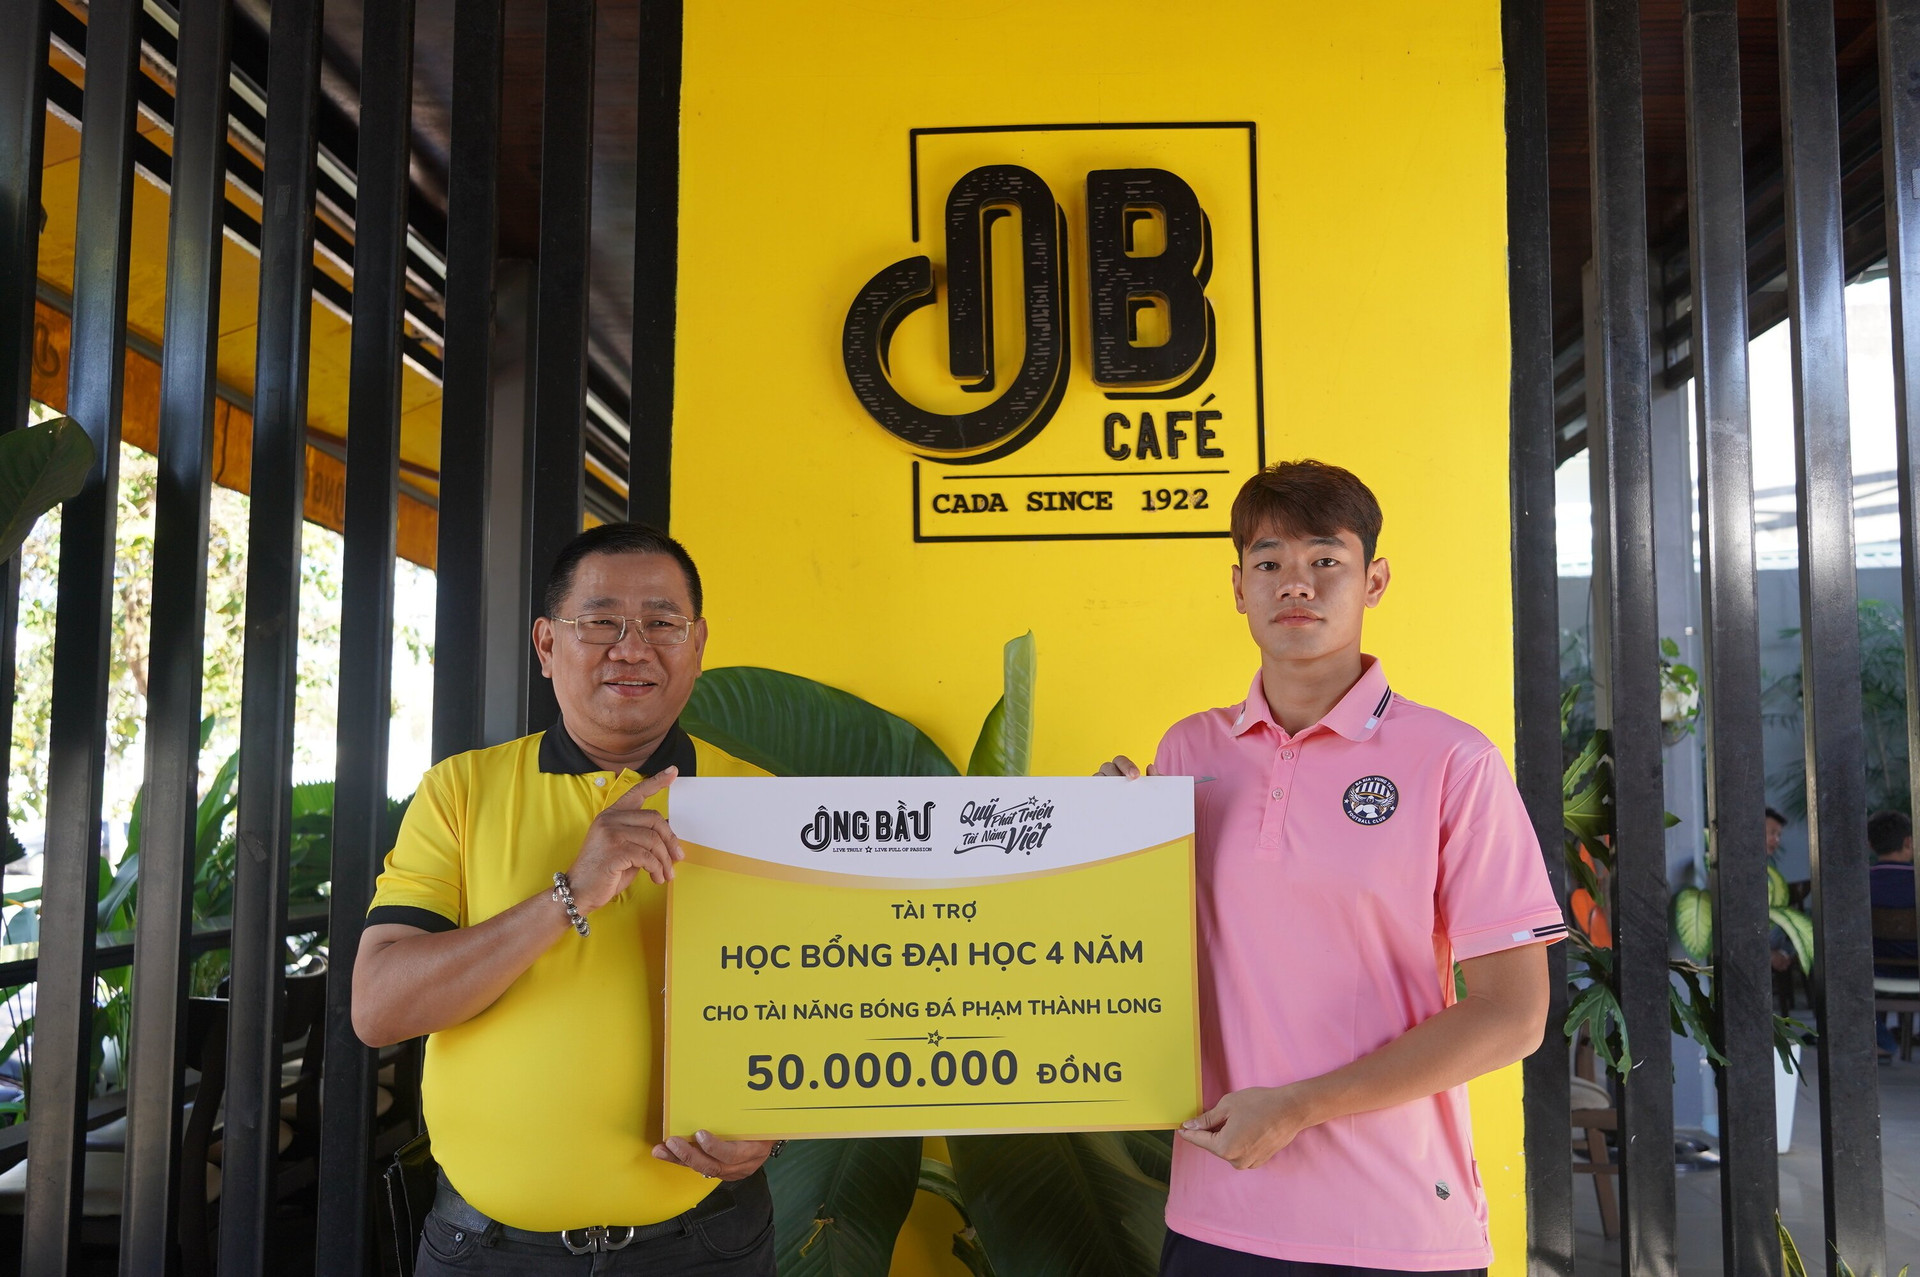 Tài năng bóng đá Phạm Thành Long nhận bảng tượng trưng học bổng từ đại diện Quỹ Phát triển Tài năng Việt của Ông Bầu.